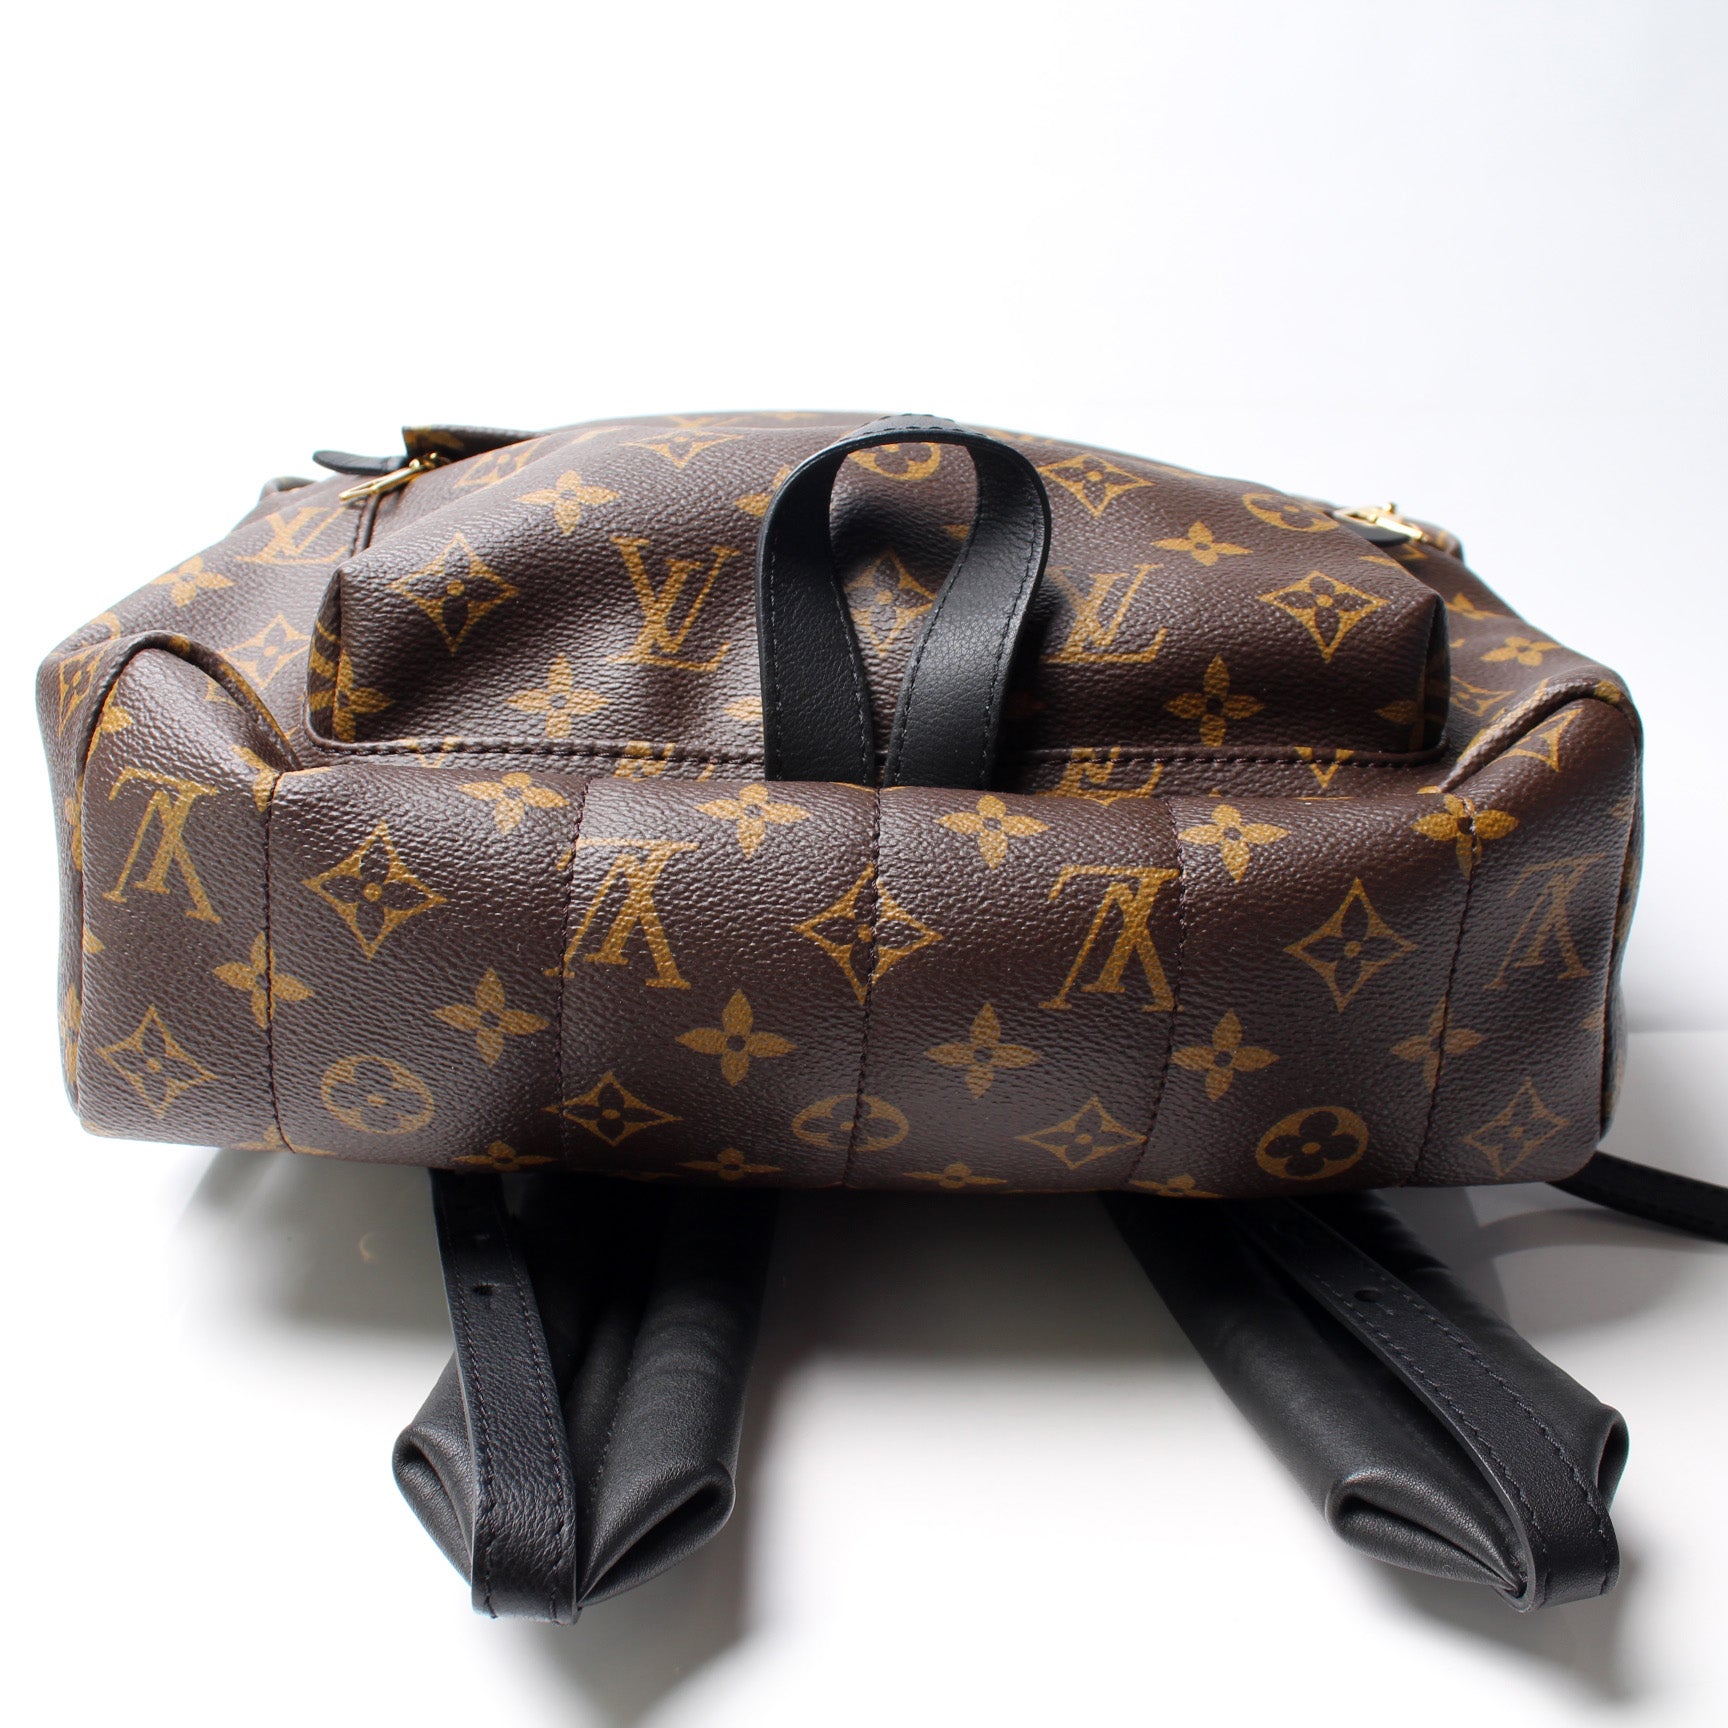 Palm Springs Backpack MM – Keeks Designer Handbags